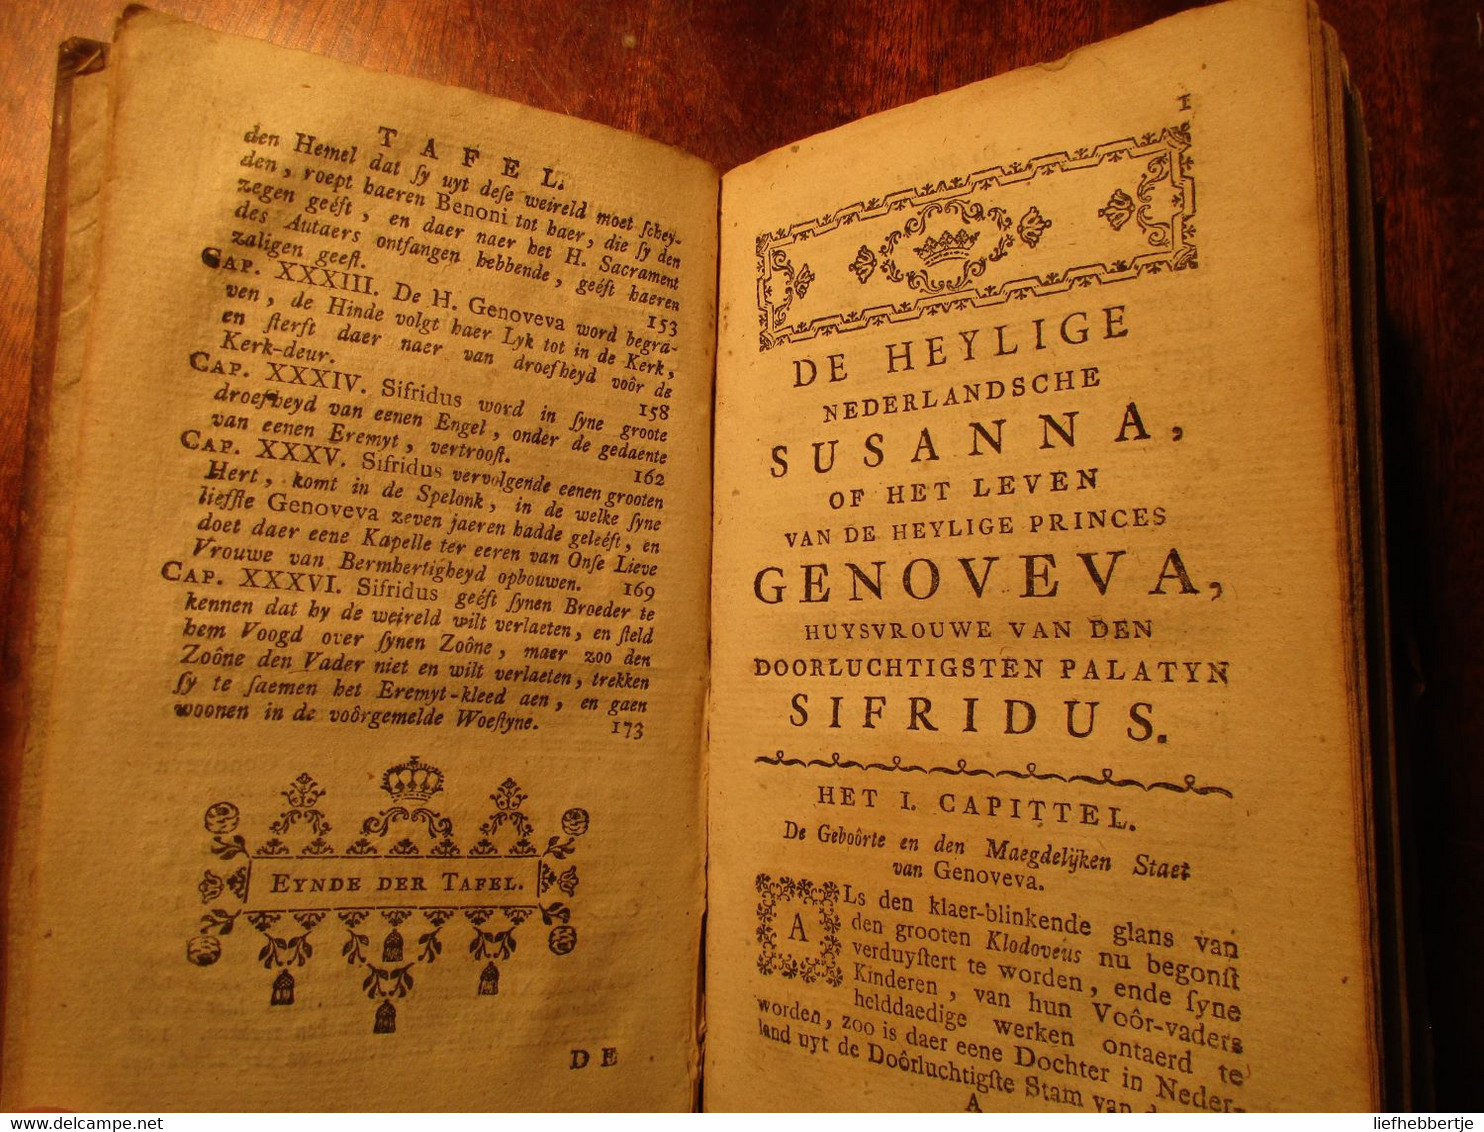 Het Leven Van De Heylige Nederlandsche Susanna, Of Genoveva, Huysvrouwe Van ... Sifridus - 1743 - Door De Ceriziers - Antiquariat